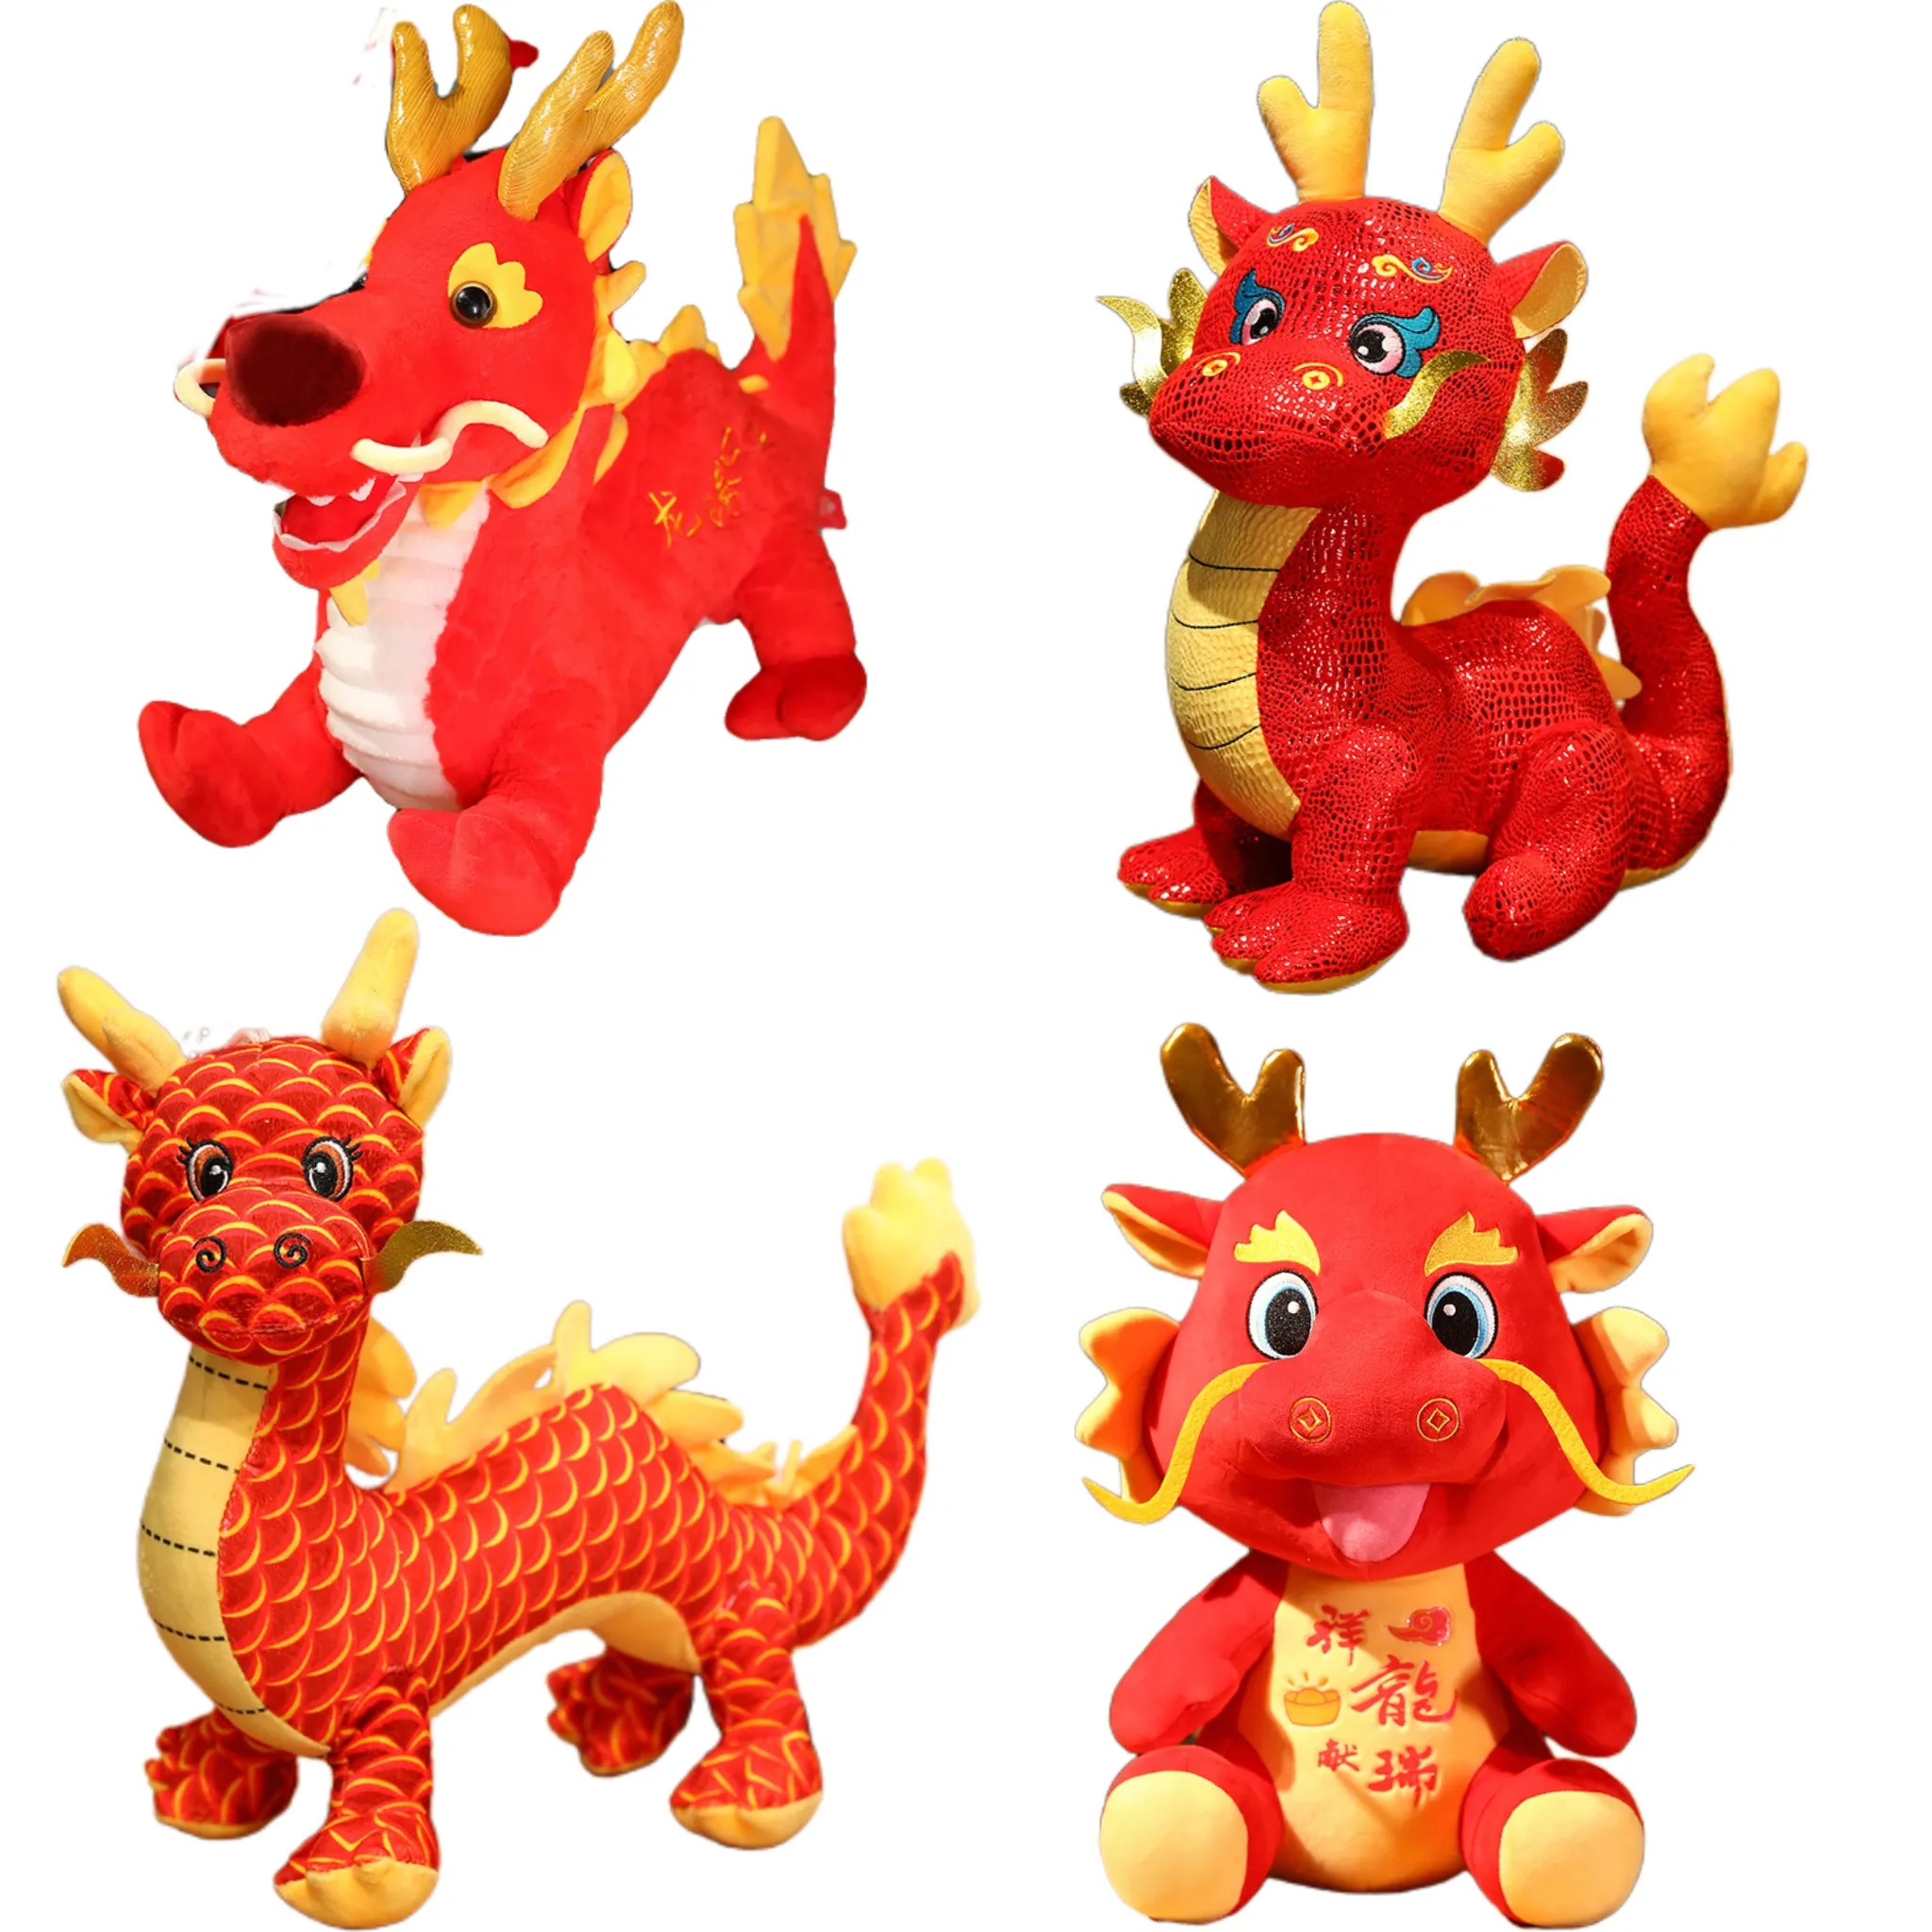 Nouvellement conçu chine année lunaire Dragon mascotte peluche Dragon rouge jouets en peluche doux chanceux réaliste Dragon doux poupées cadeau de nouvel an